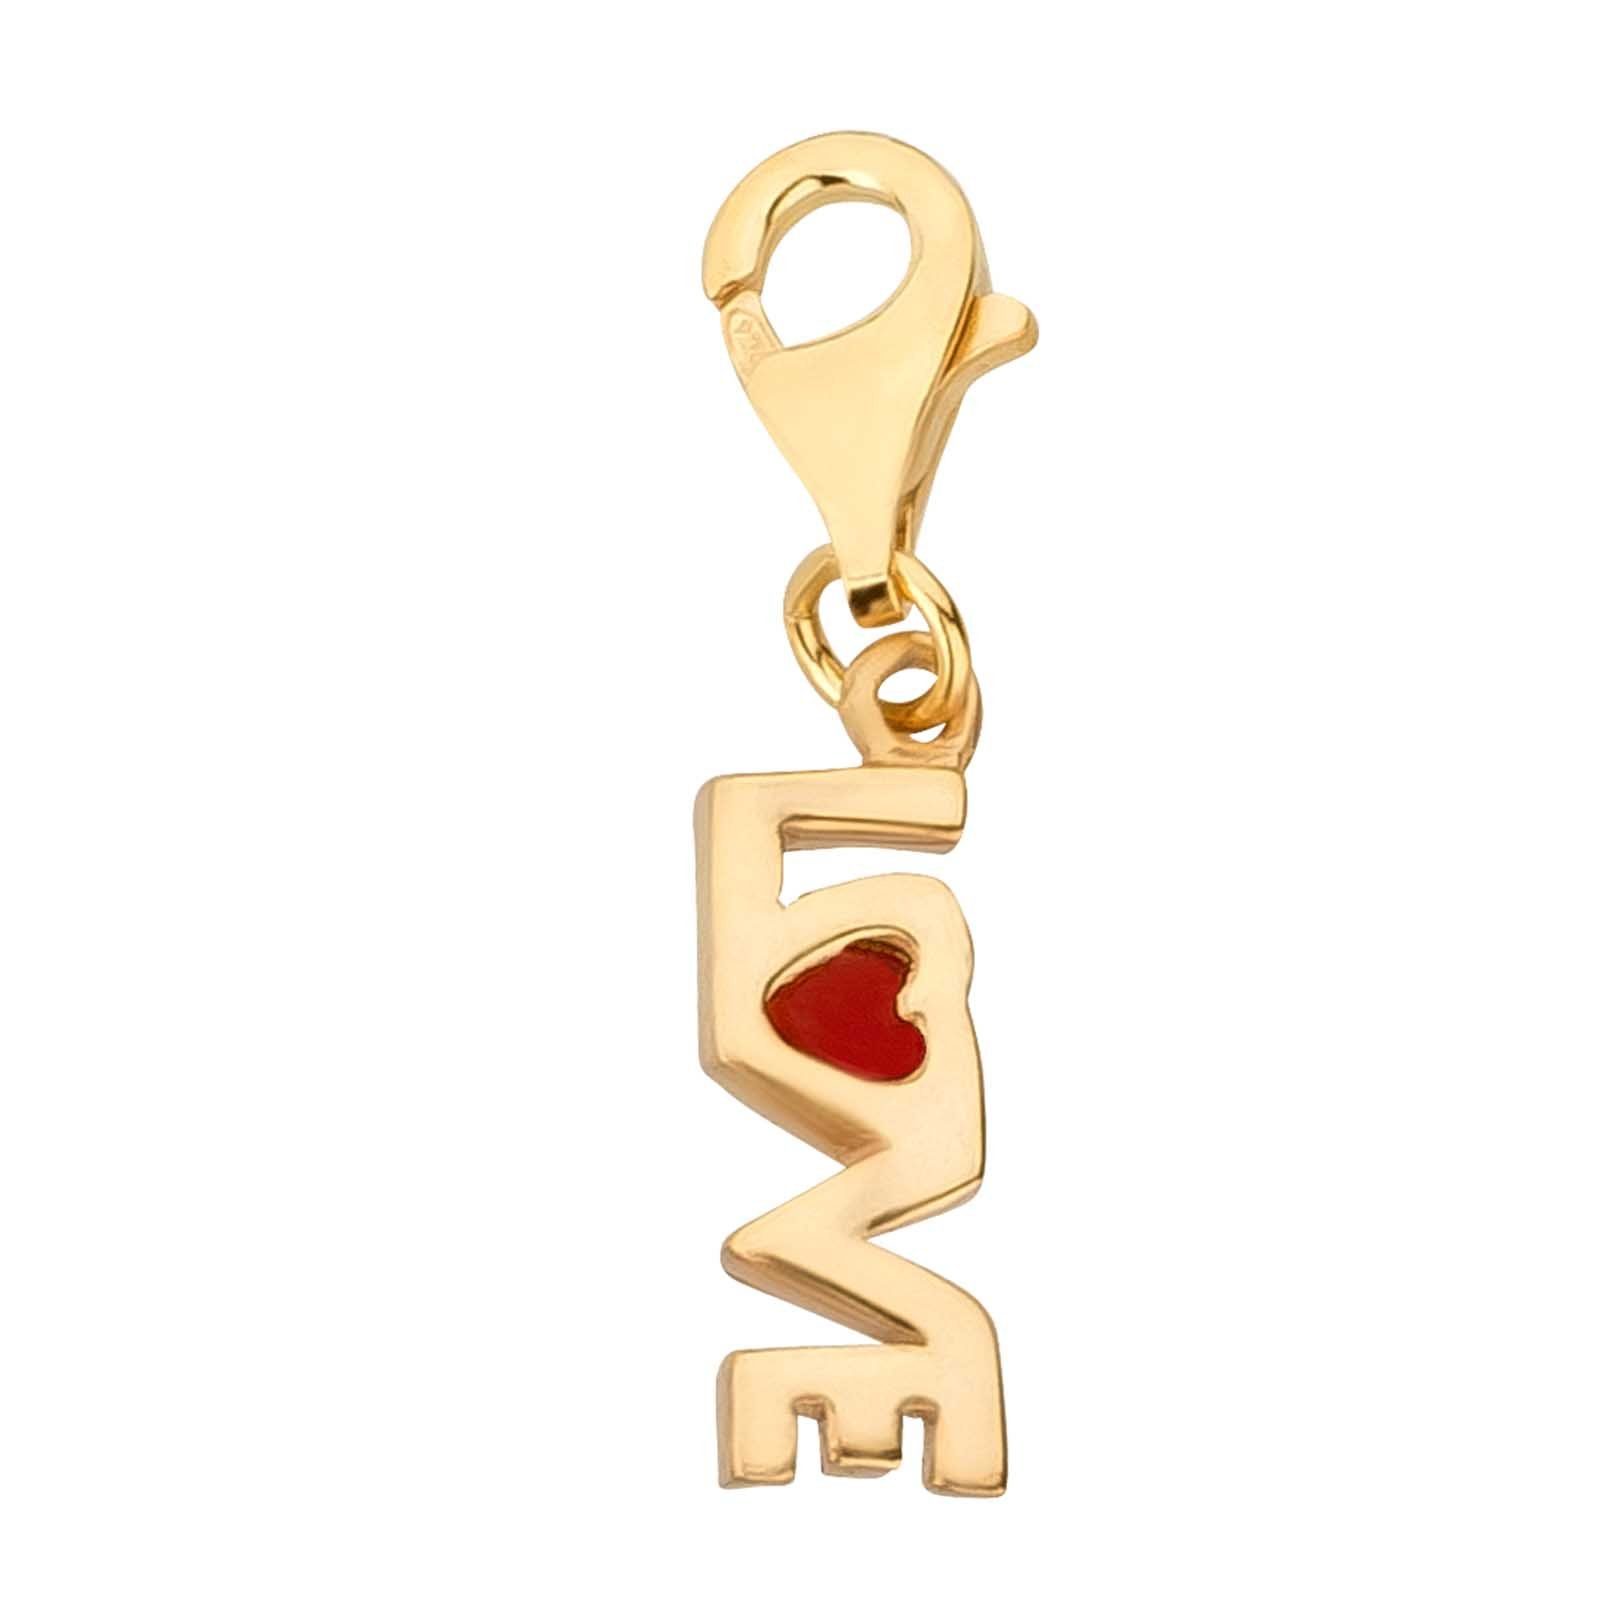 schmuck23 Charm-Einhänger Charm Anhänger Love Liebe 925 Silber gold Kettenanhänger (1-tlg), Für Armband, Halskette oder Schlüsselanhänger | Charm-Anhänger